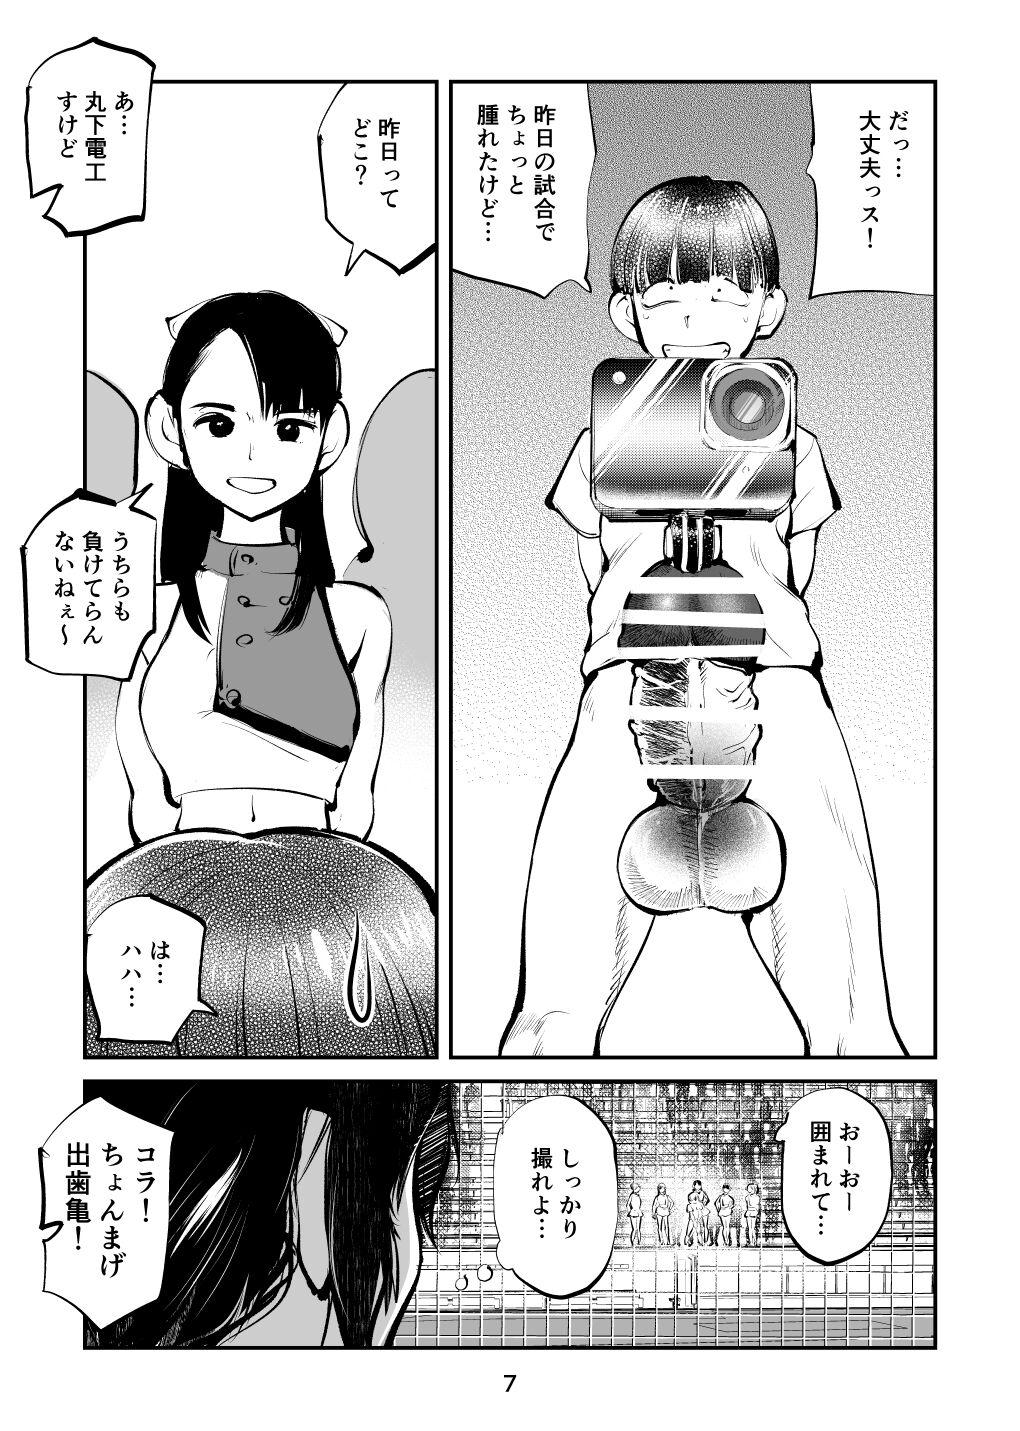 Banheiro Kinkeri Cheer Girl VS Tosatsuma Shakai Hito Cheer Girl-hen - Original Amador - Page 7